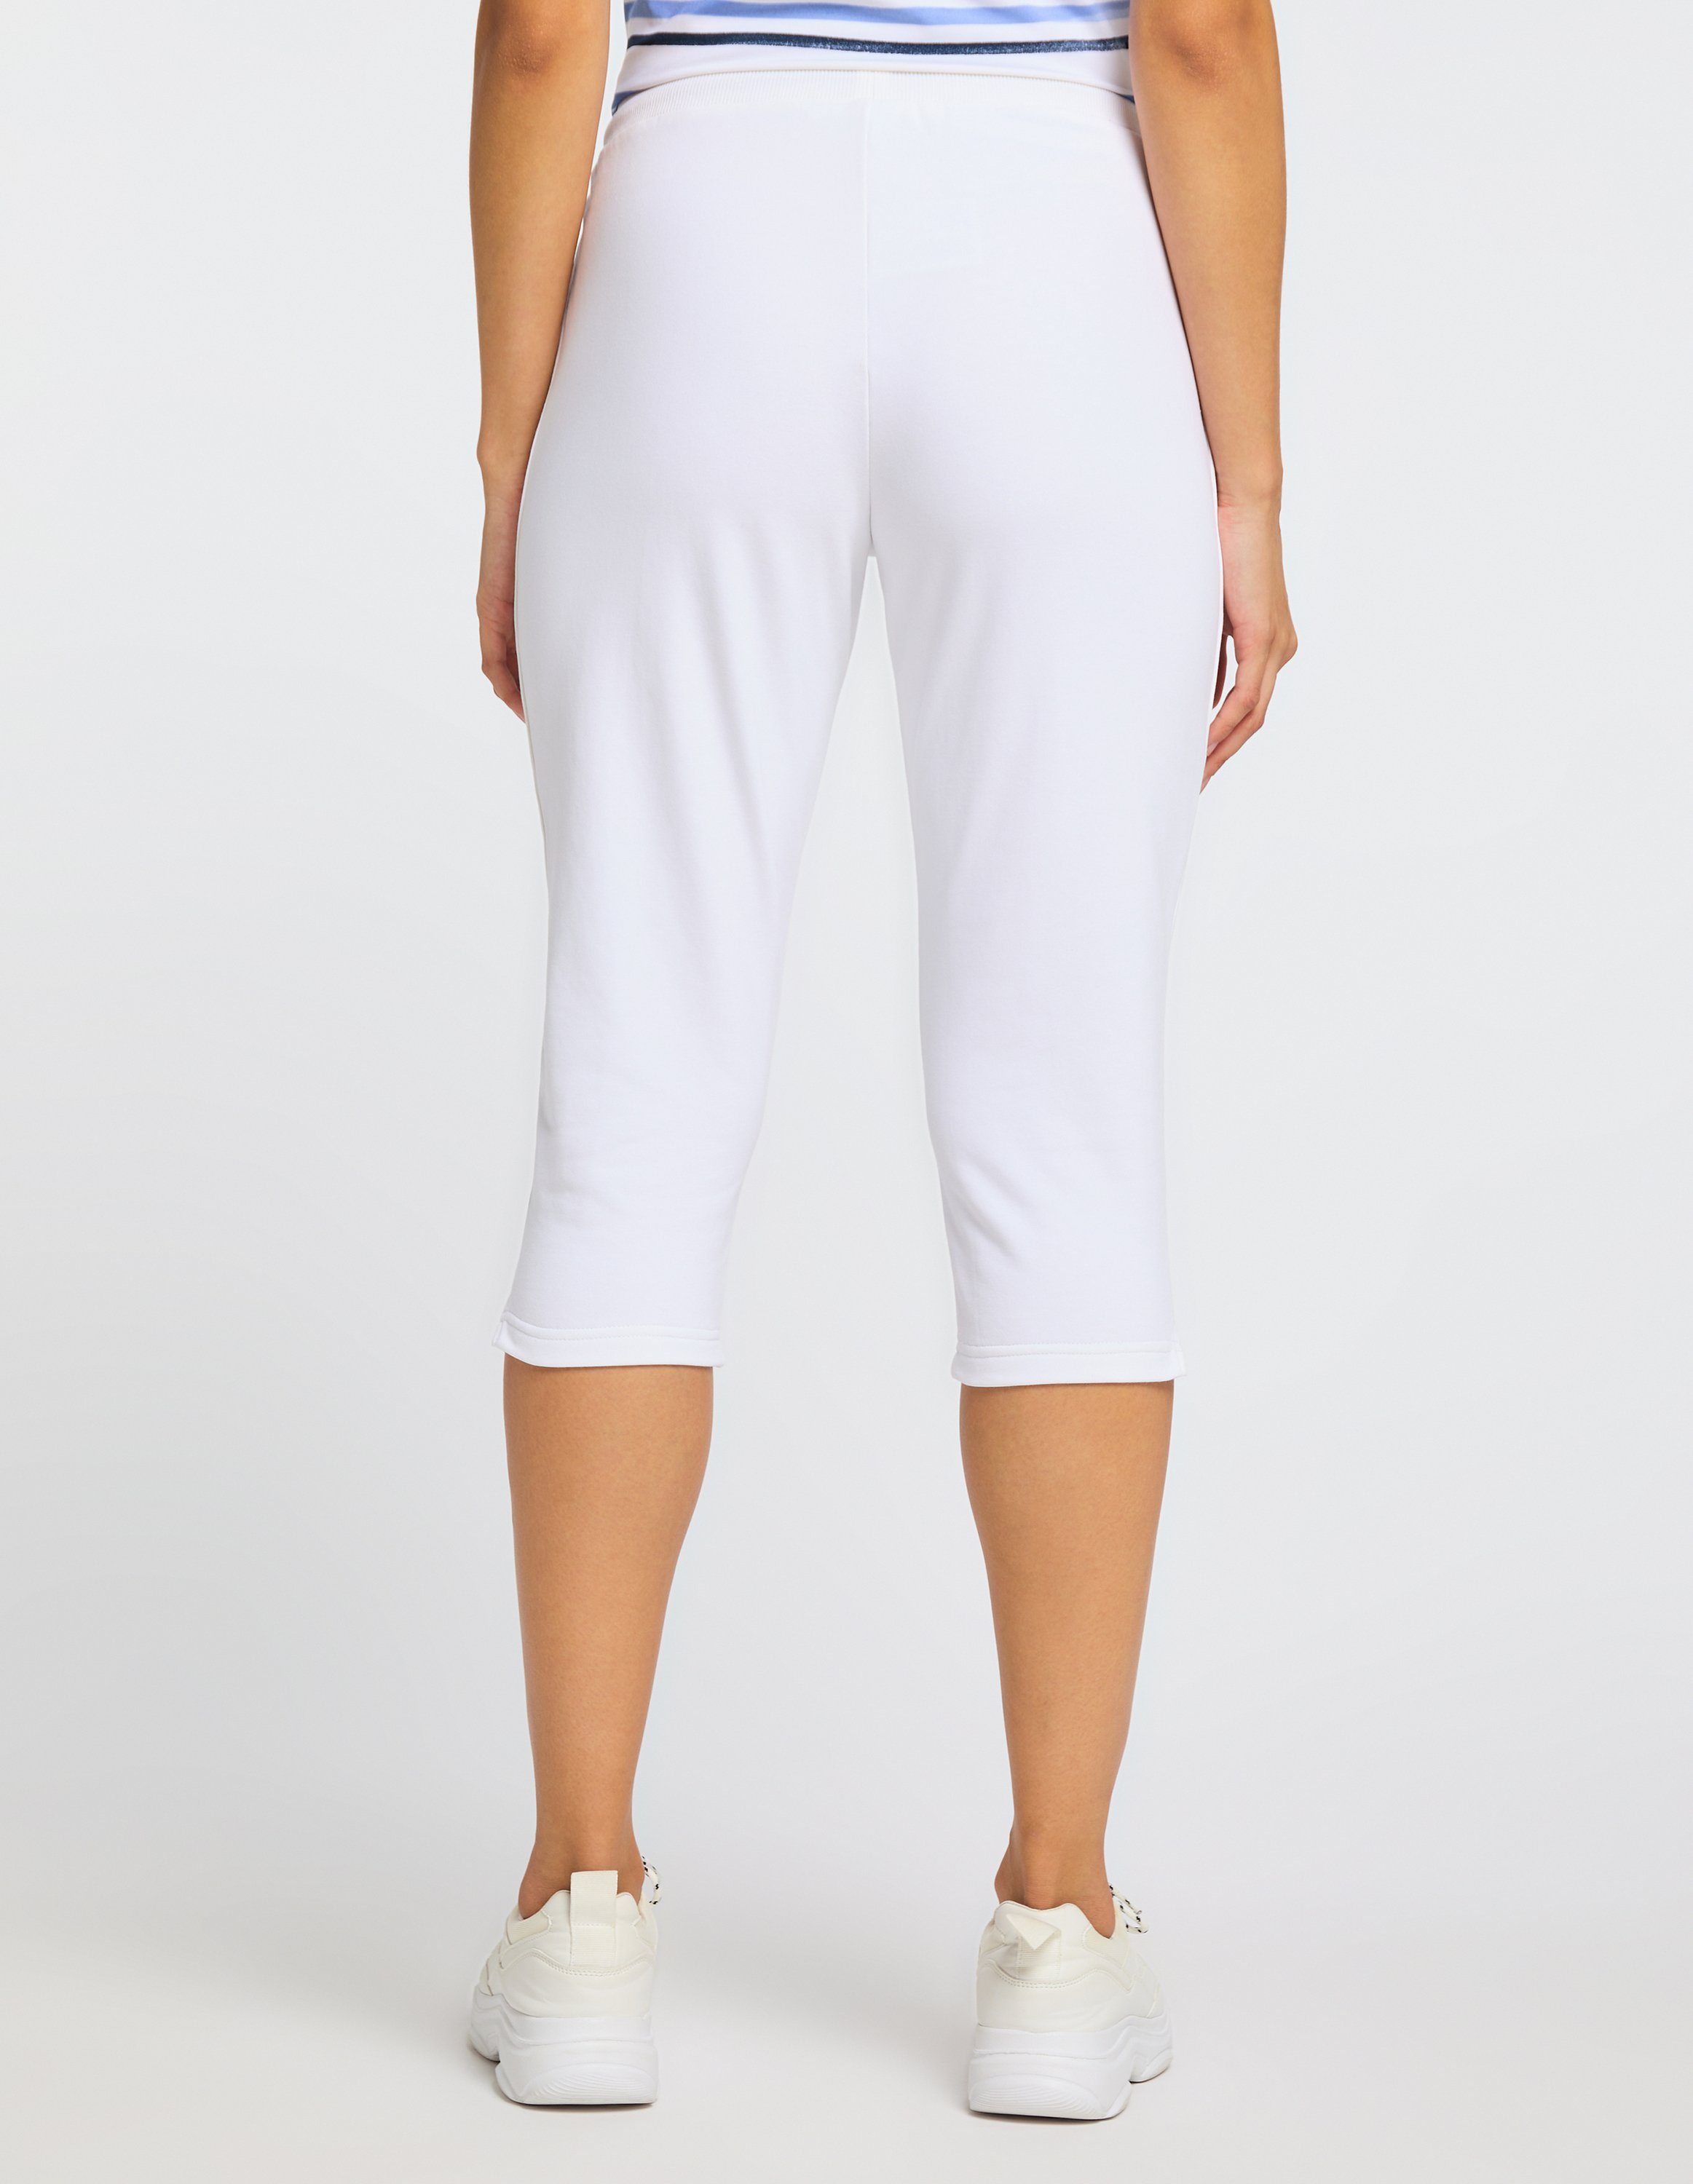 Joy white Sportswear HARPER 3/4-Hose 3/4-Hose